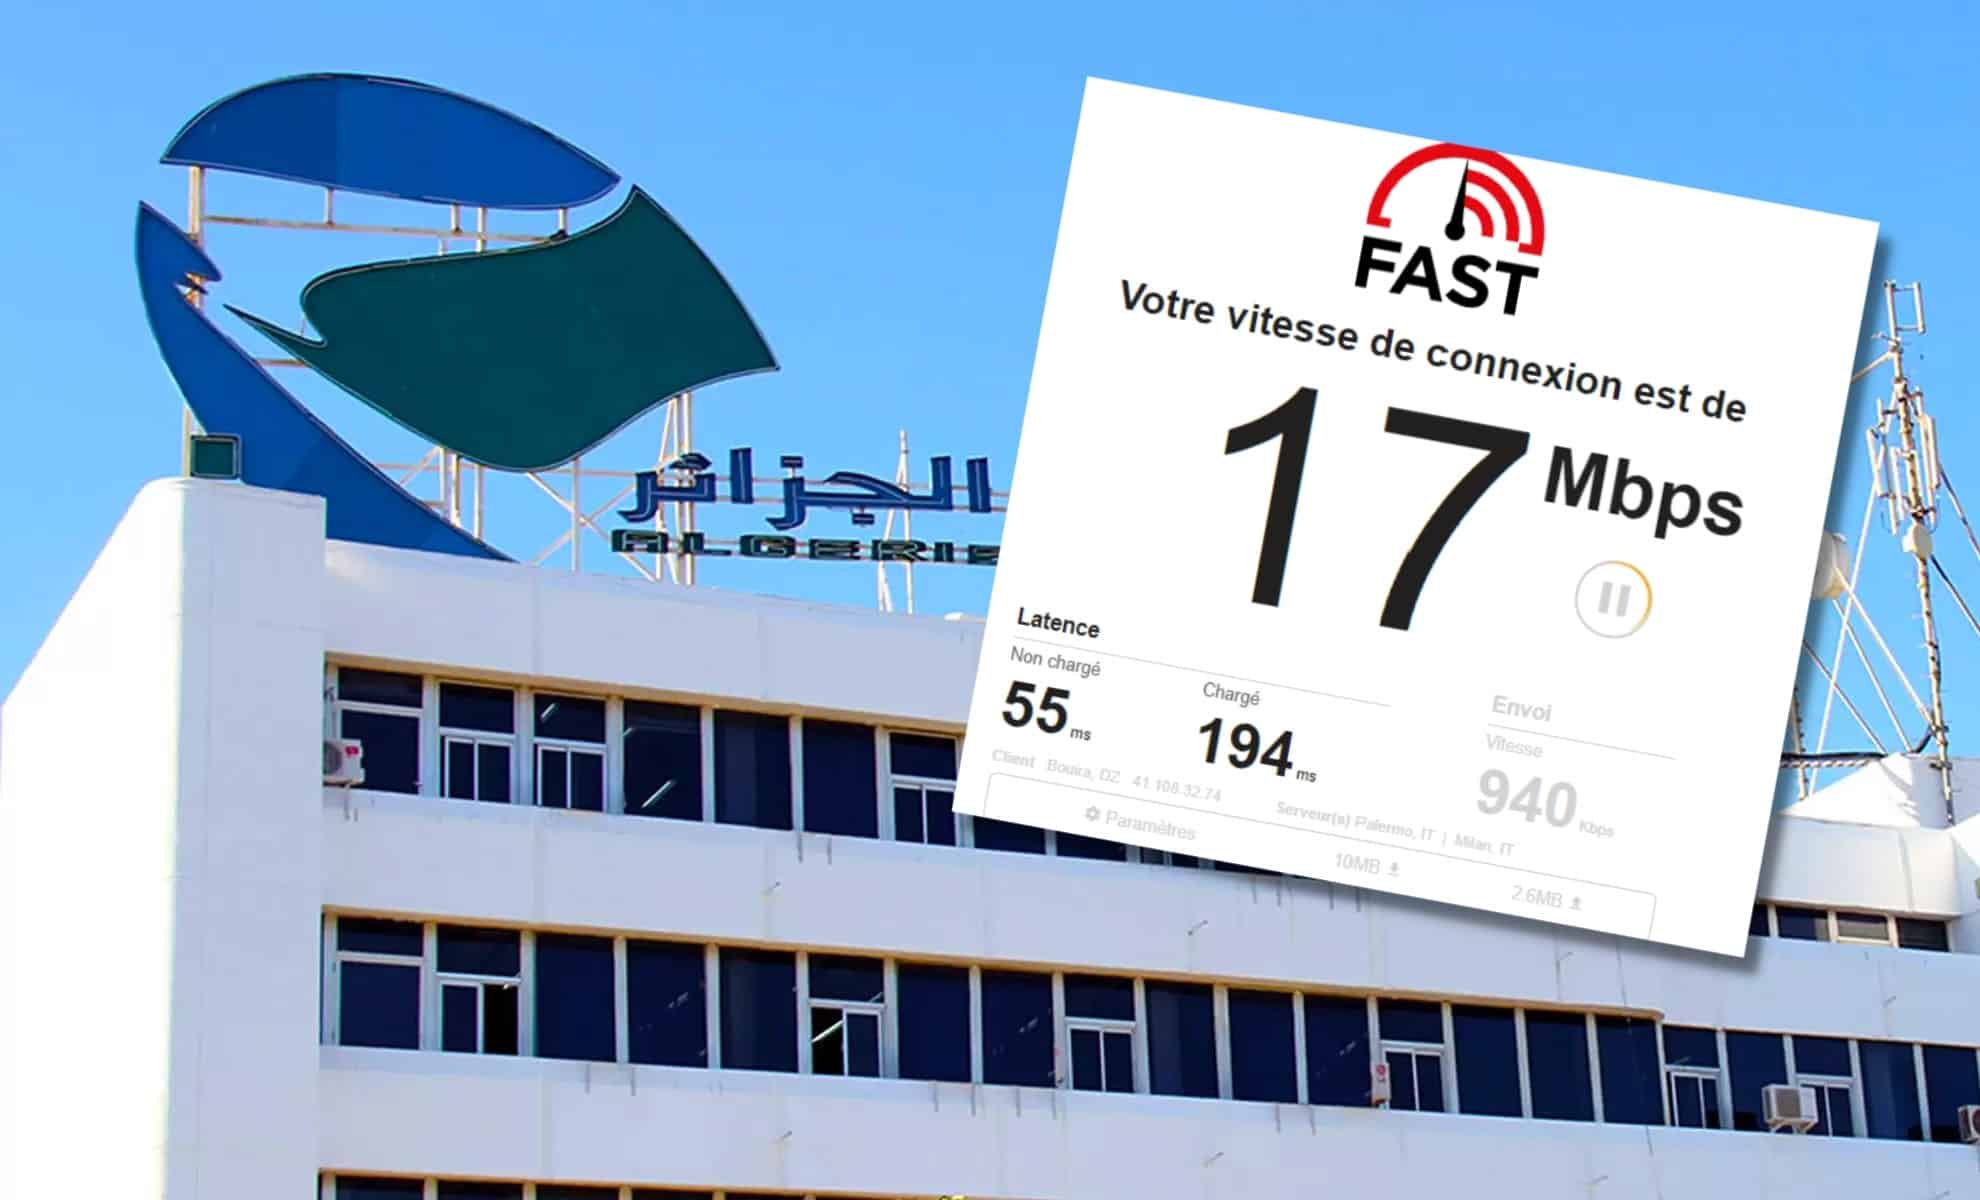 Montage : Test de connexion (Fast) sur fond de bâtiment de Algérie Télécom